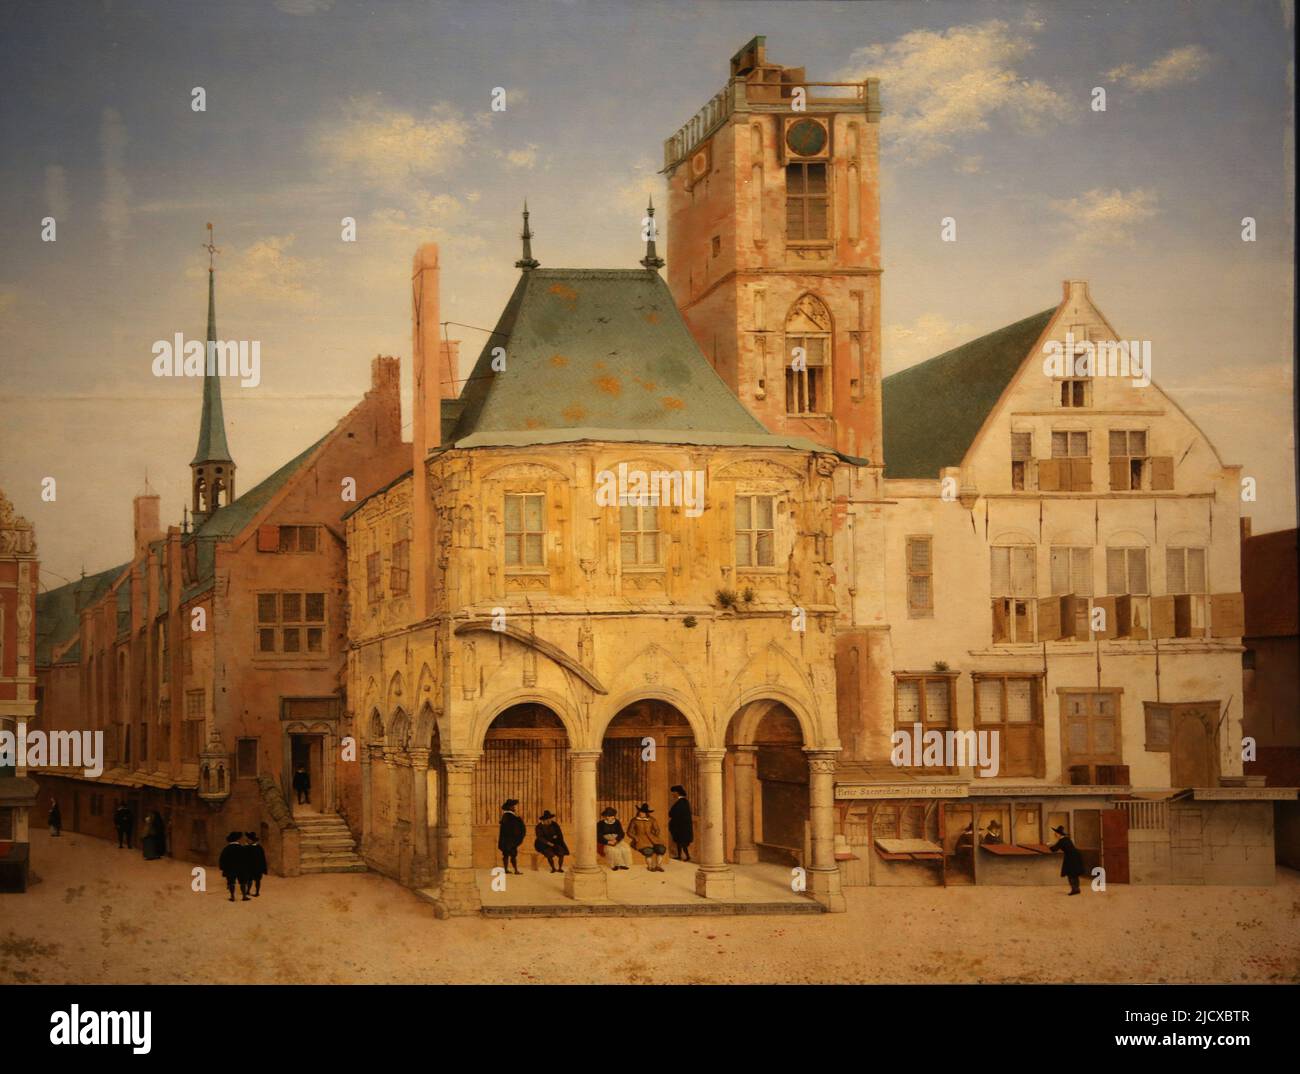 Das alte Rathaus von Amsterdam, von Pieter Jansz Saenredam (1597-1665). Öl auf Platte, 1657. Rijksmuseum. Amsterdam. Niederlande. Stockfoto